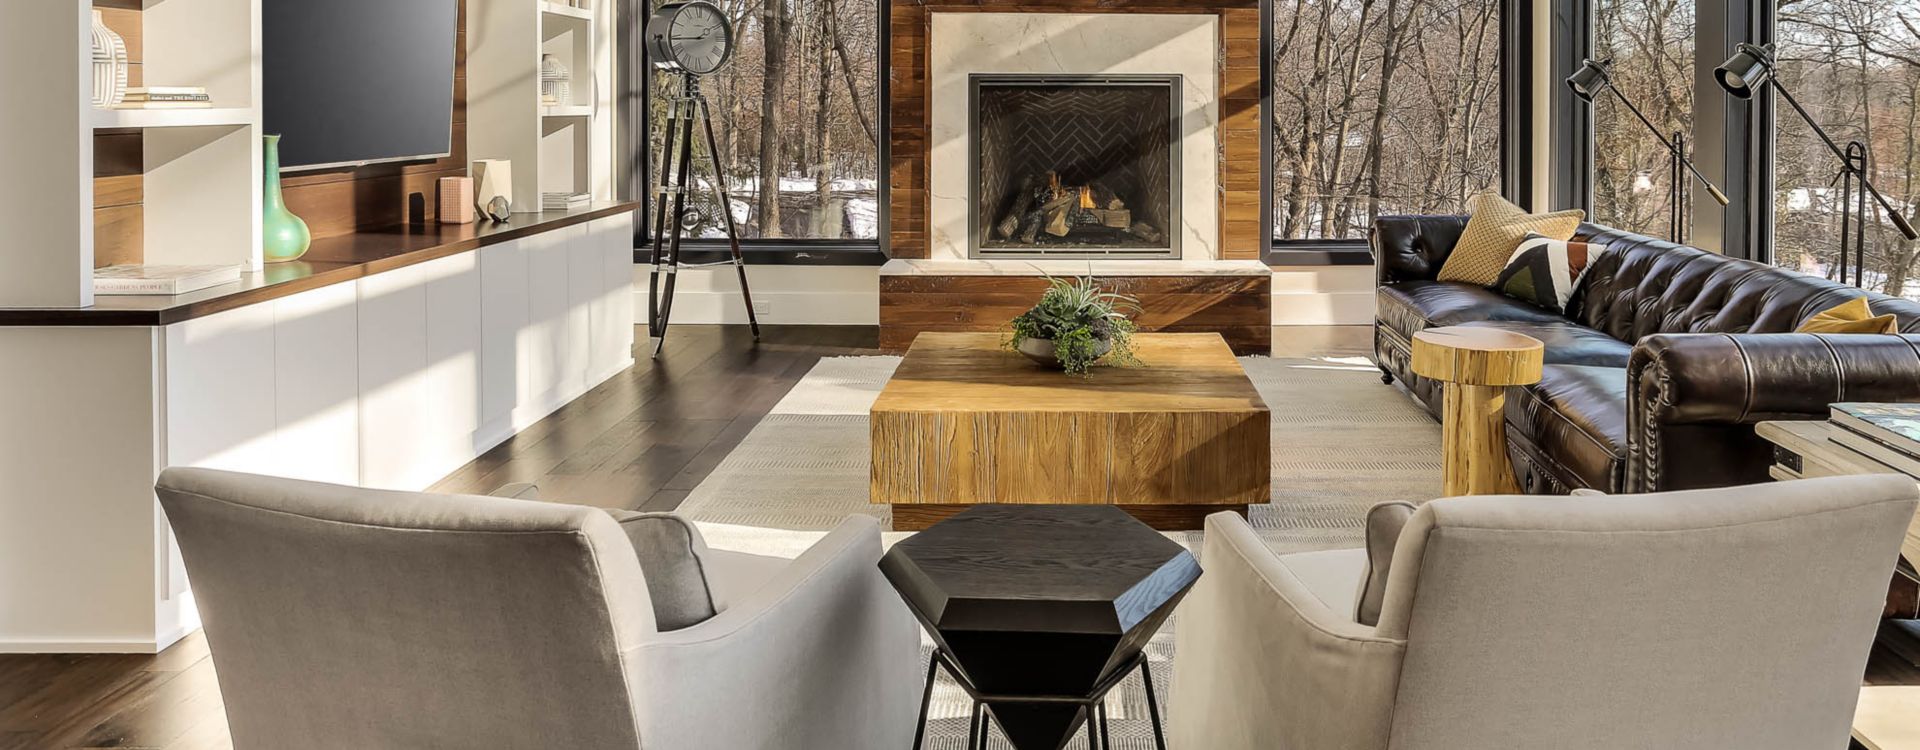 40+ Stunning Gallery Of Living Room Tile Ideas Ideas | Kitchen Sohor